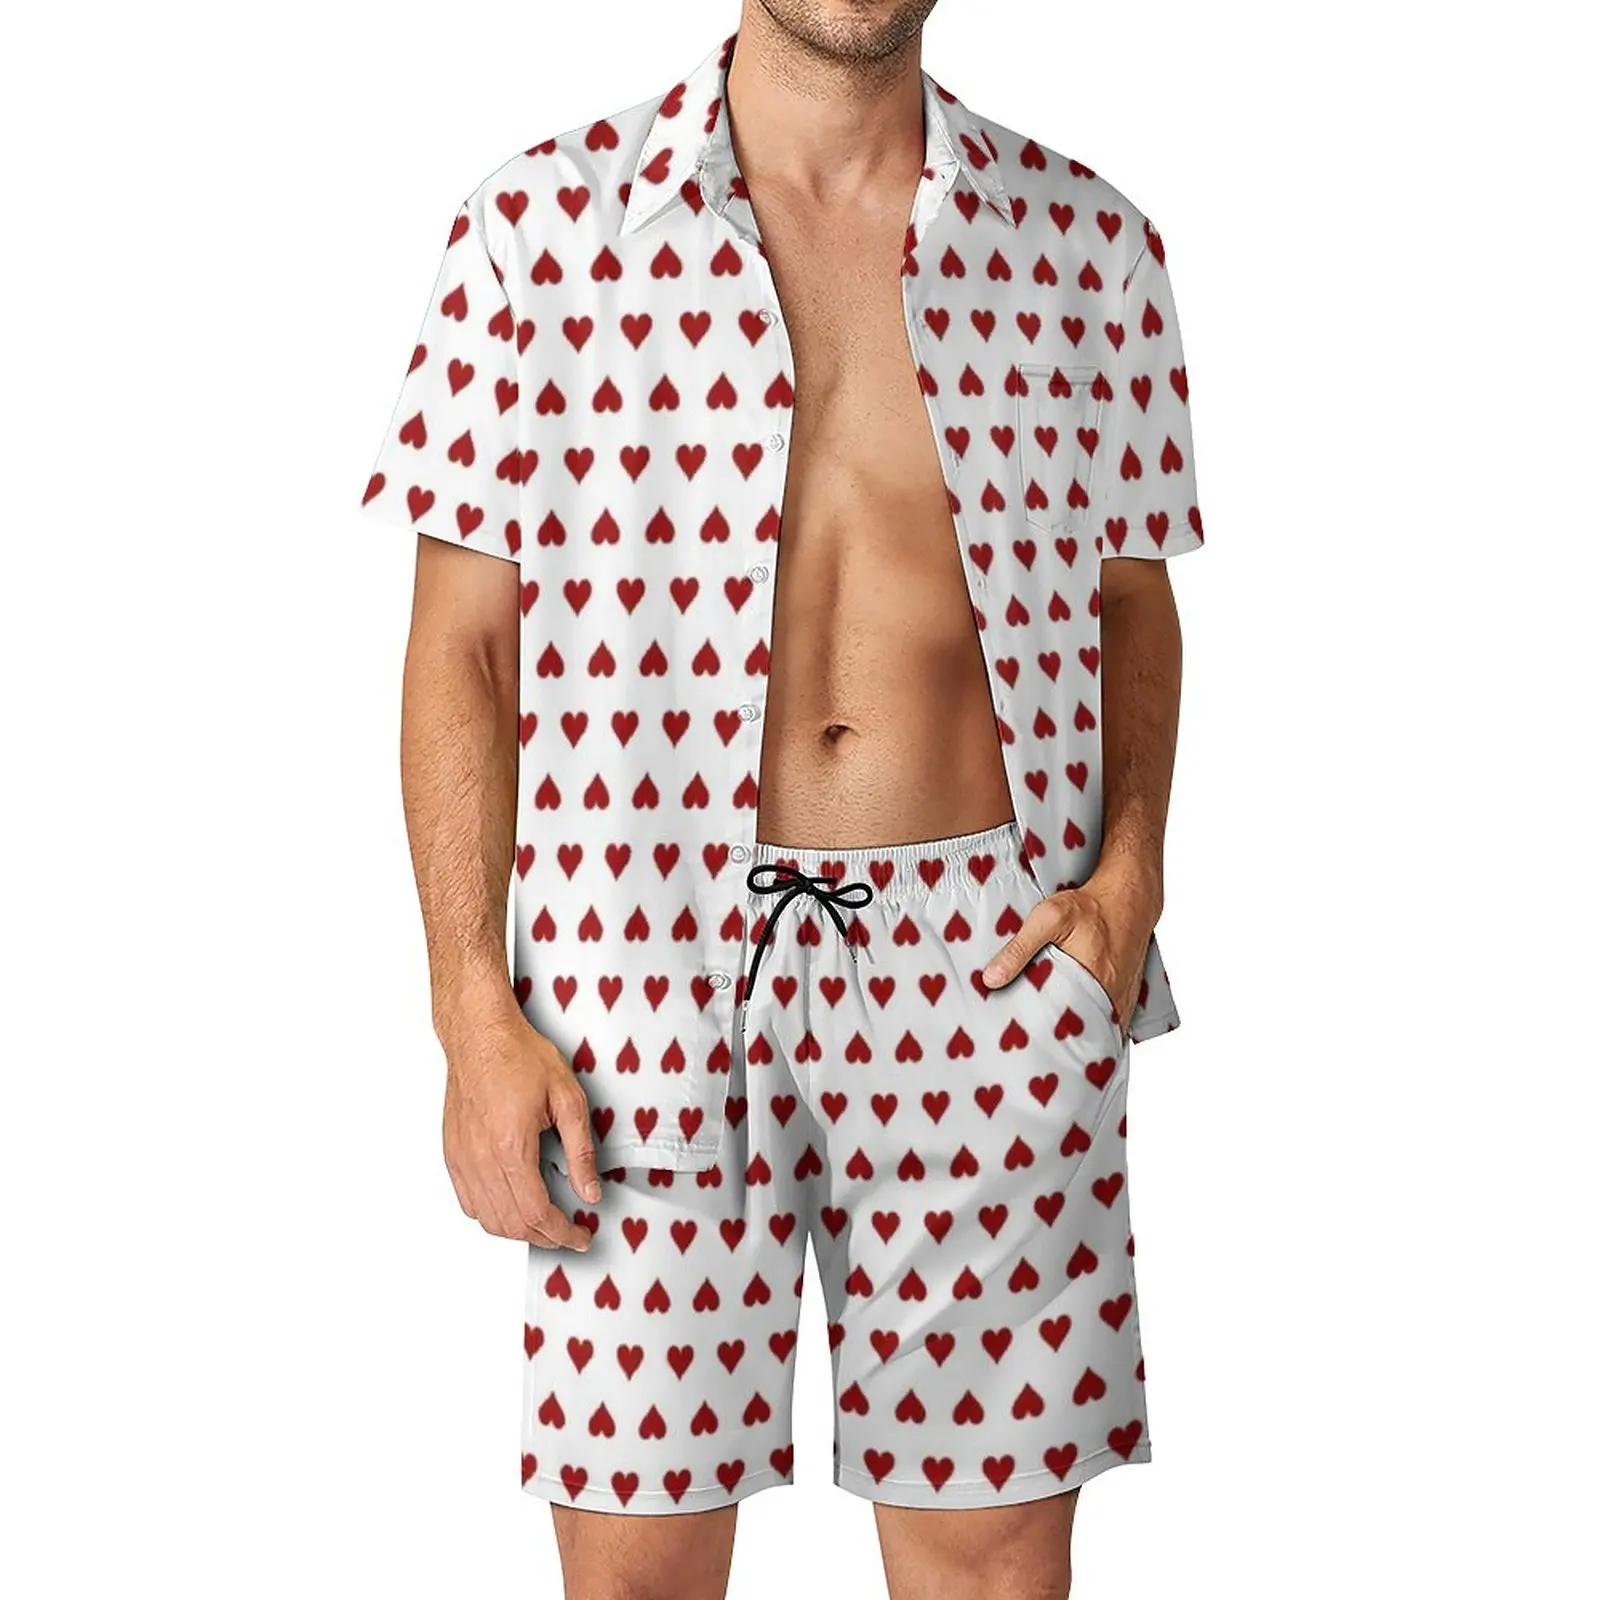 

Мужские пляжные комплекты, красная модель, Повседневная рубашка с принтом игральных карт, летние графические шорты, комплект из двух предметов, гавайский костюм большого размера